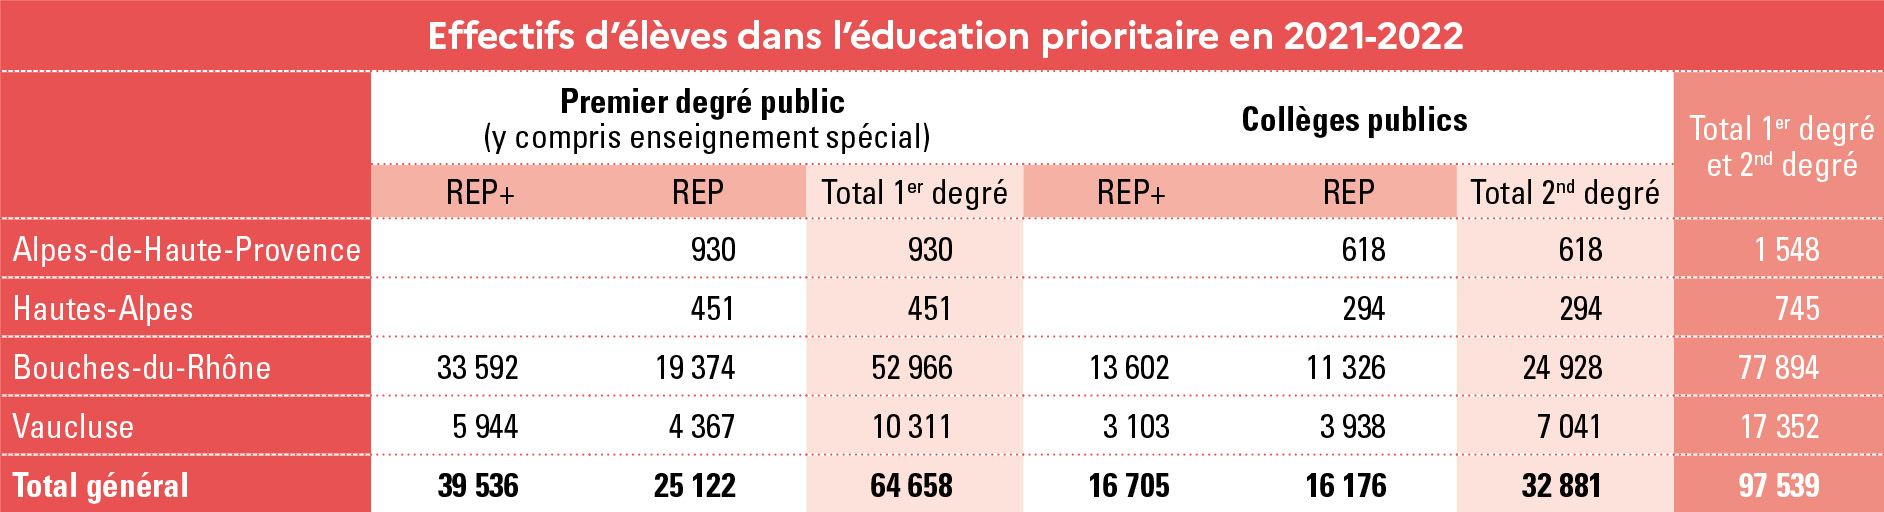 Effectifs d'élèves dans l'éducation prioritaire en 2021-2022